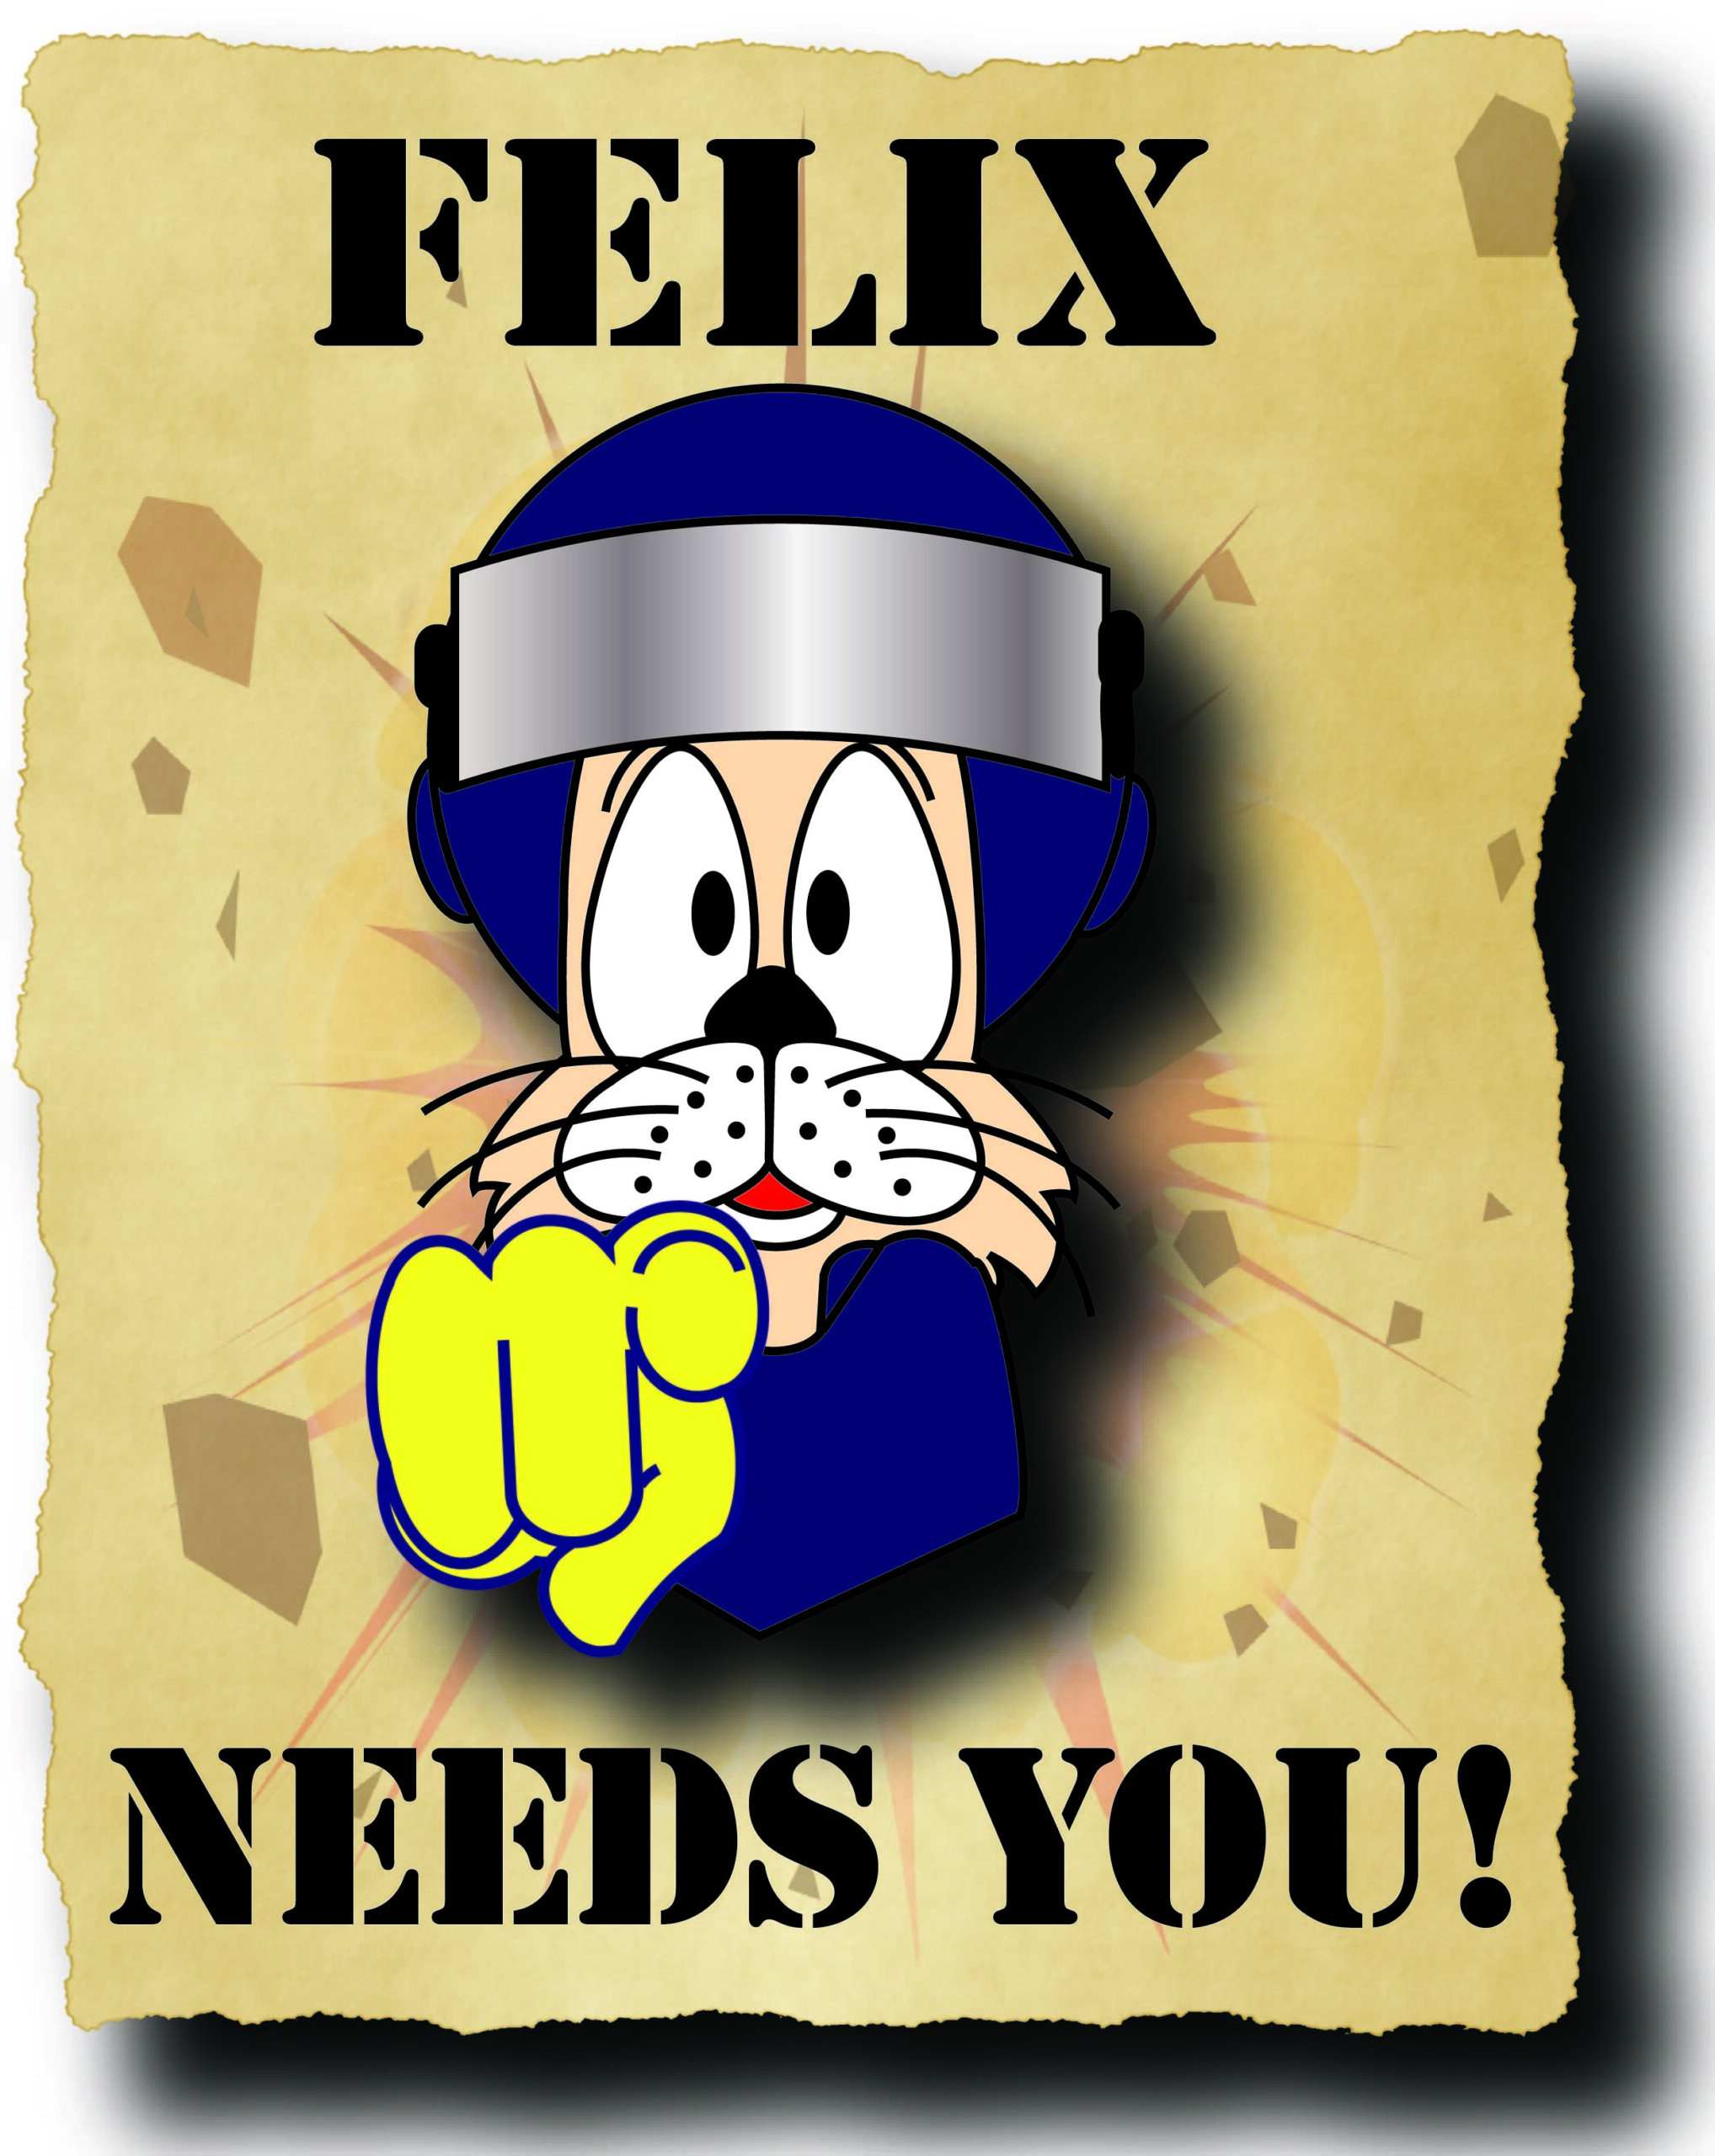 Felix Needs you image